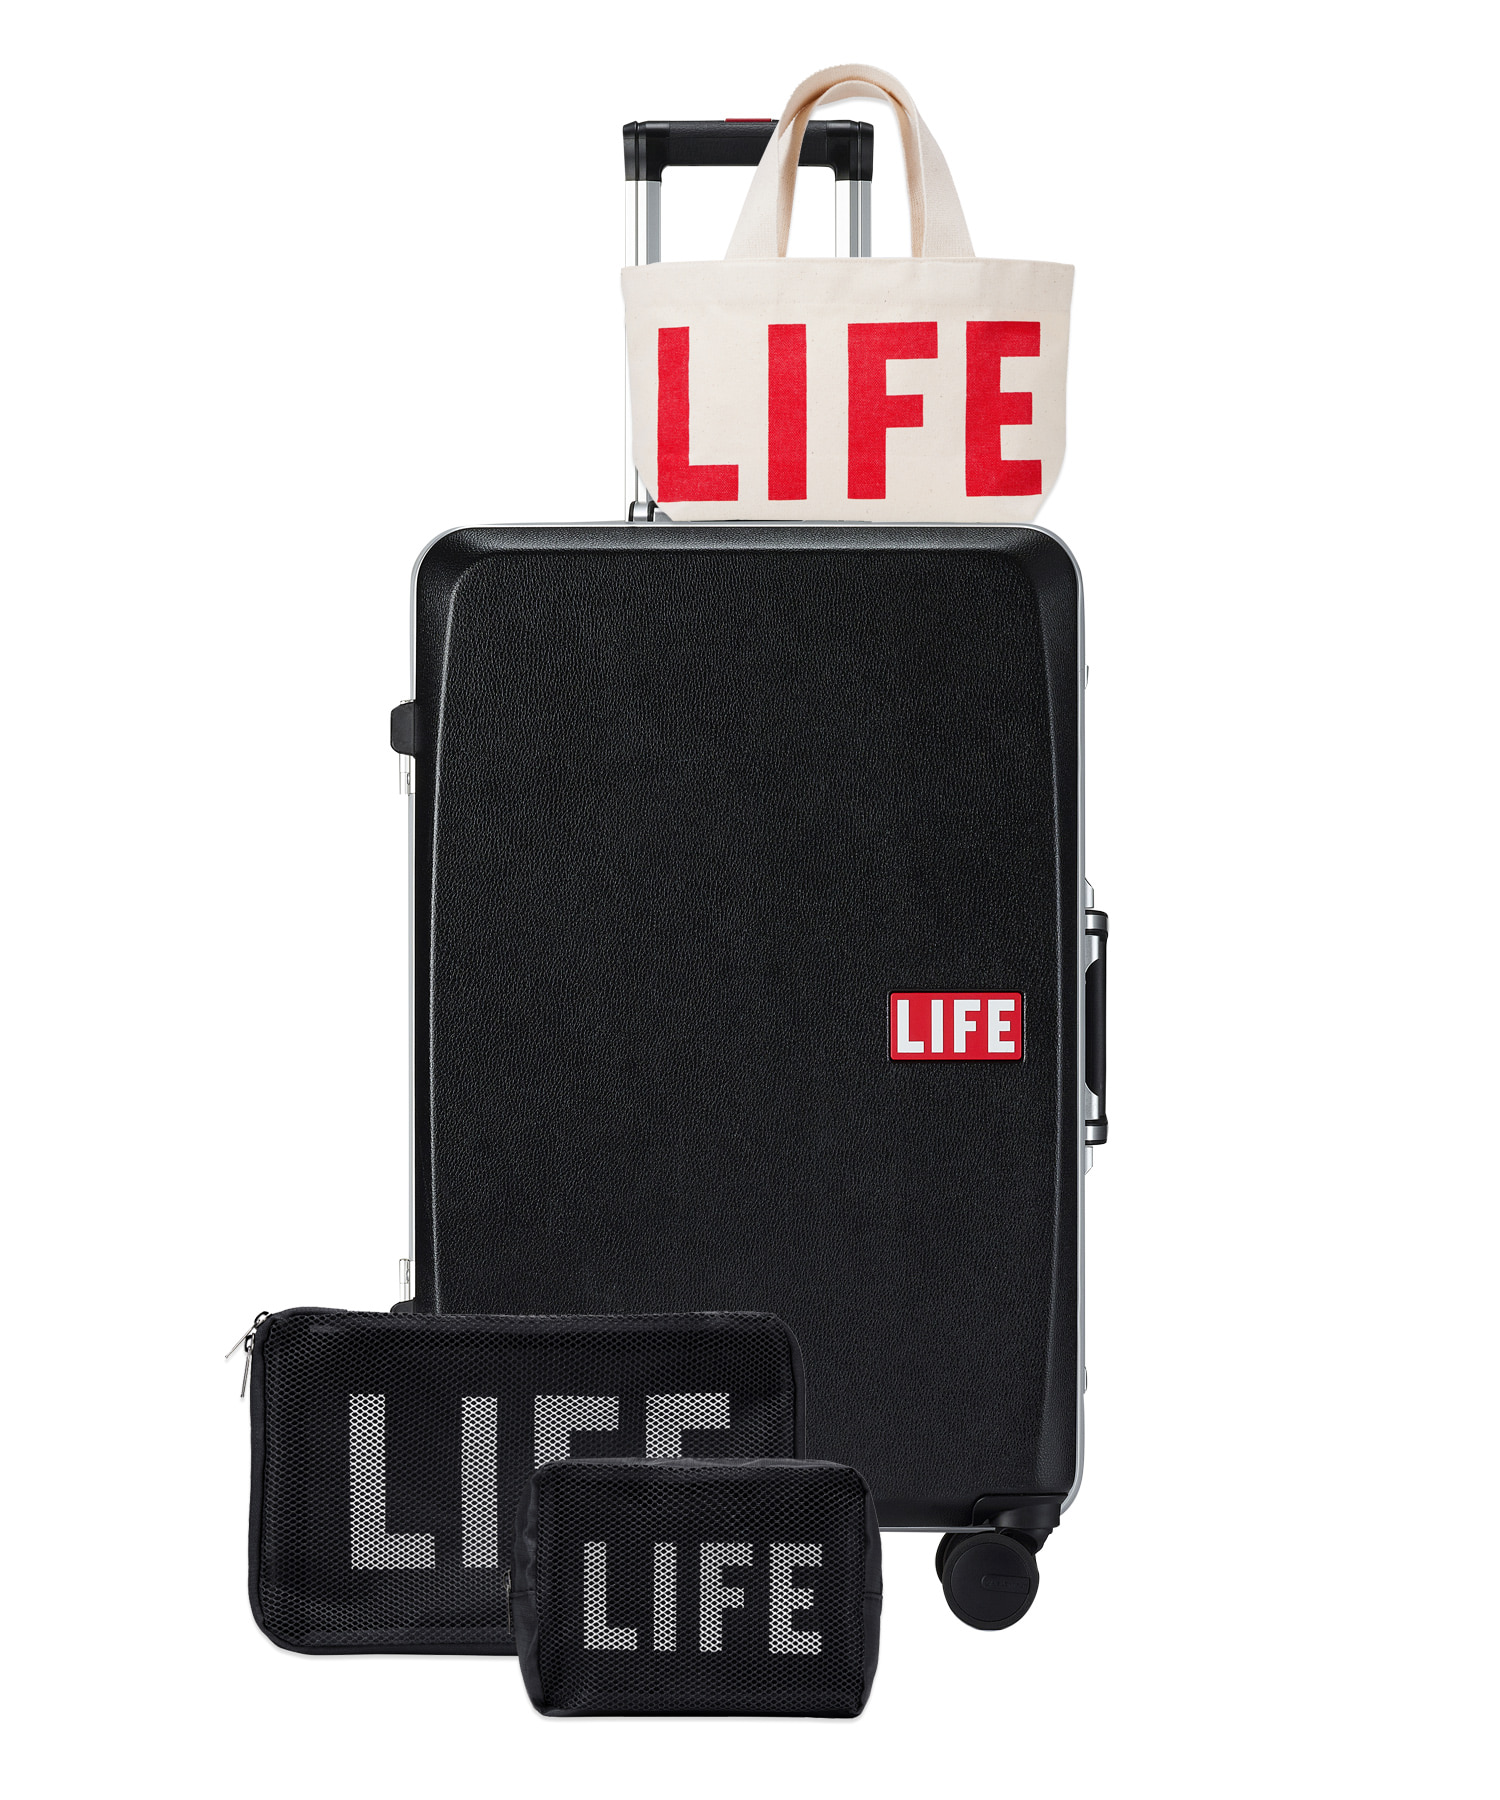 자체브랜드 [회원전용혜택]LIFE CLASSIC LUGGAGE 61L_BLACK 라이프,LIFE, LIFE ARCHIVE, 일회용 카메라, 카메라